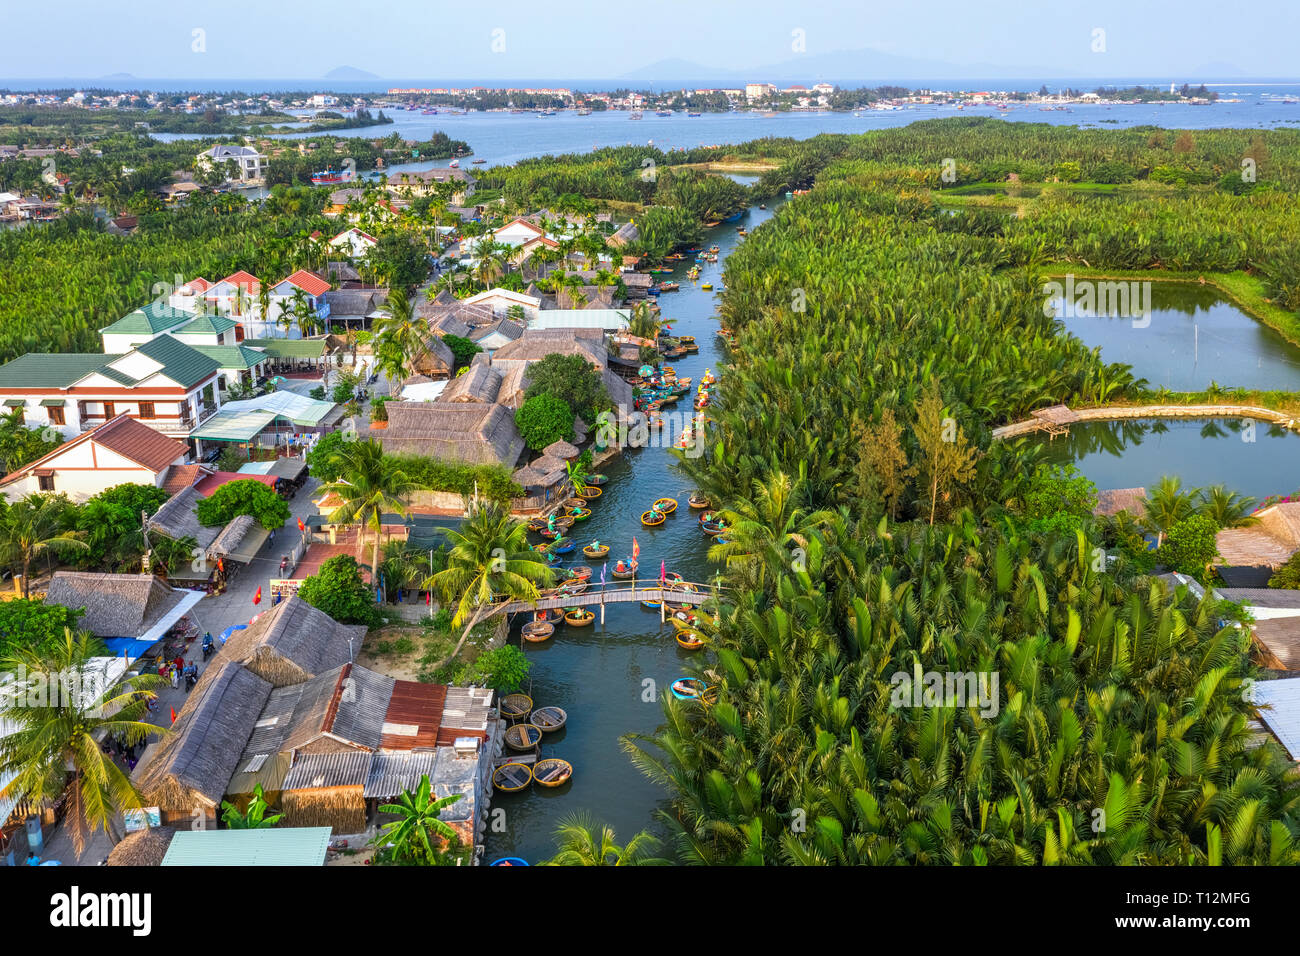 Vue aérienne, les touristes de la Chine, la Corée, l'Amérique, la Russie d'un panier à l'excursion en bateau à l'eau de coco palm mangrove ( ) de la forêt. Hoi An, Quang Nam, Vietnam Banque D'Images